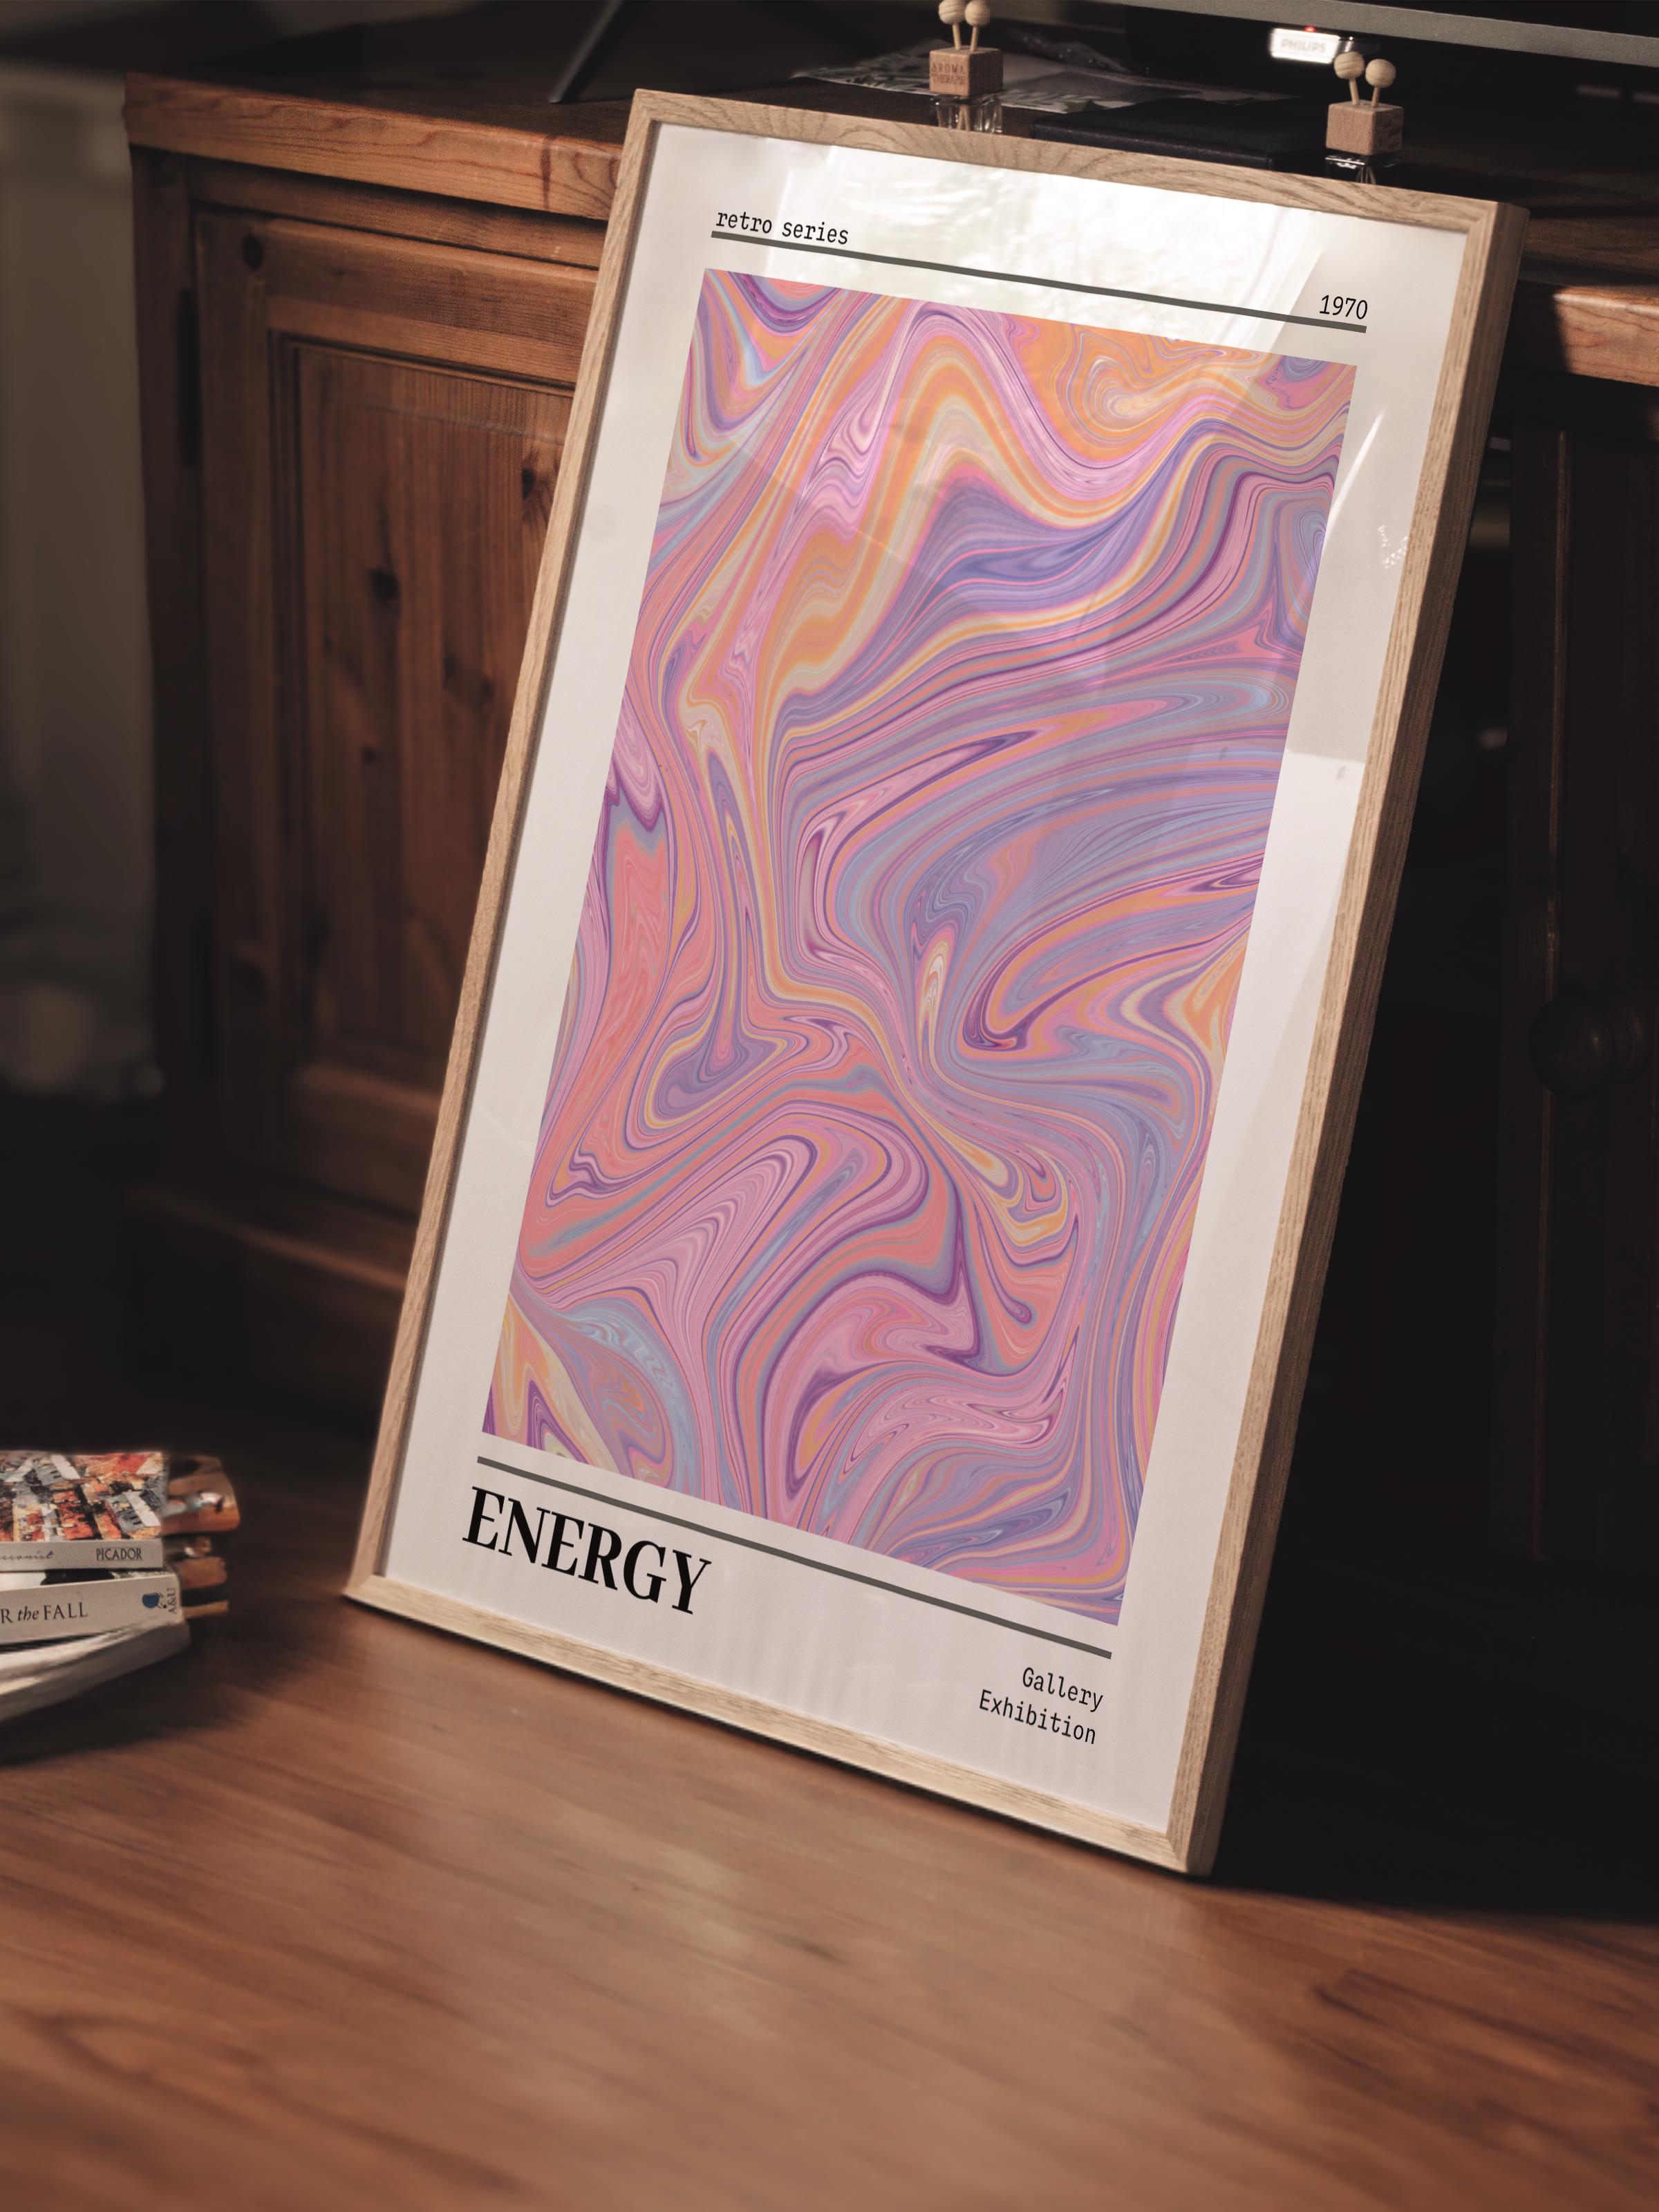 Çerçevesiz Poster, Aura Serisi NO:214 - Energy Renkli, Melek Numaraları, Renkli Poster